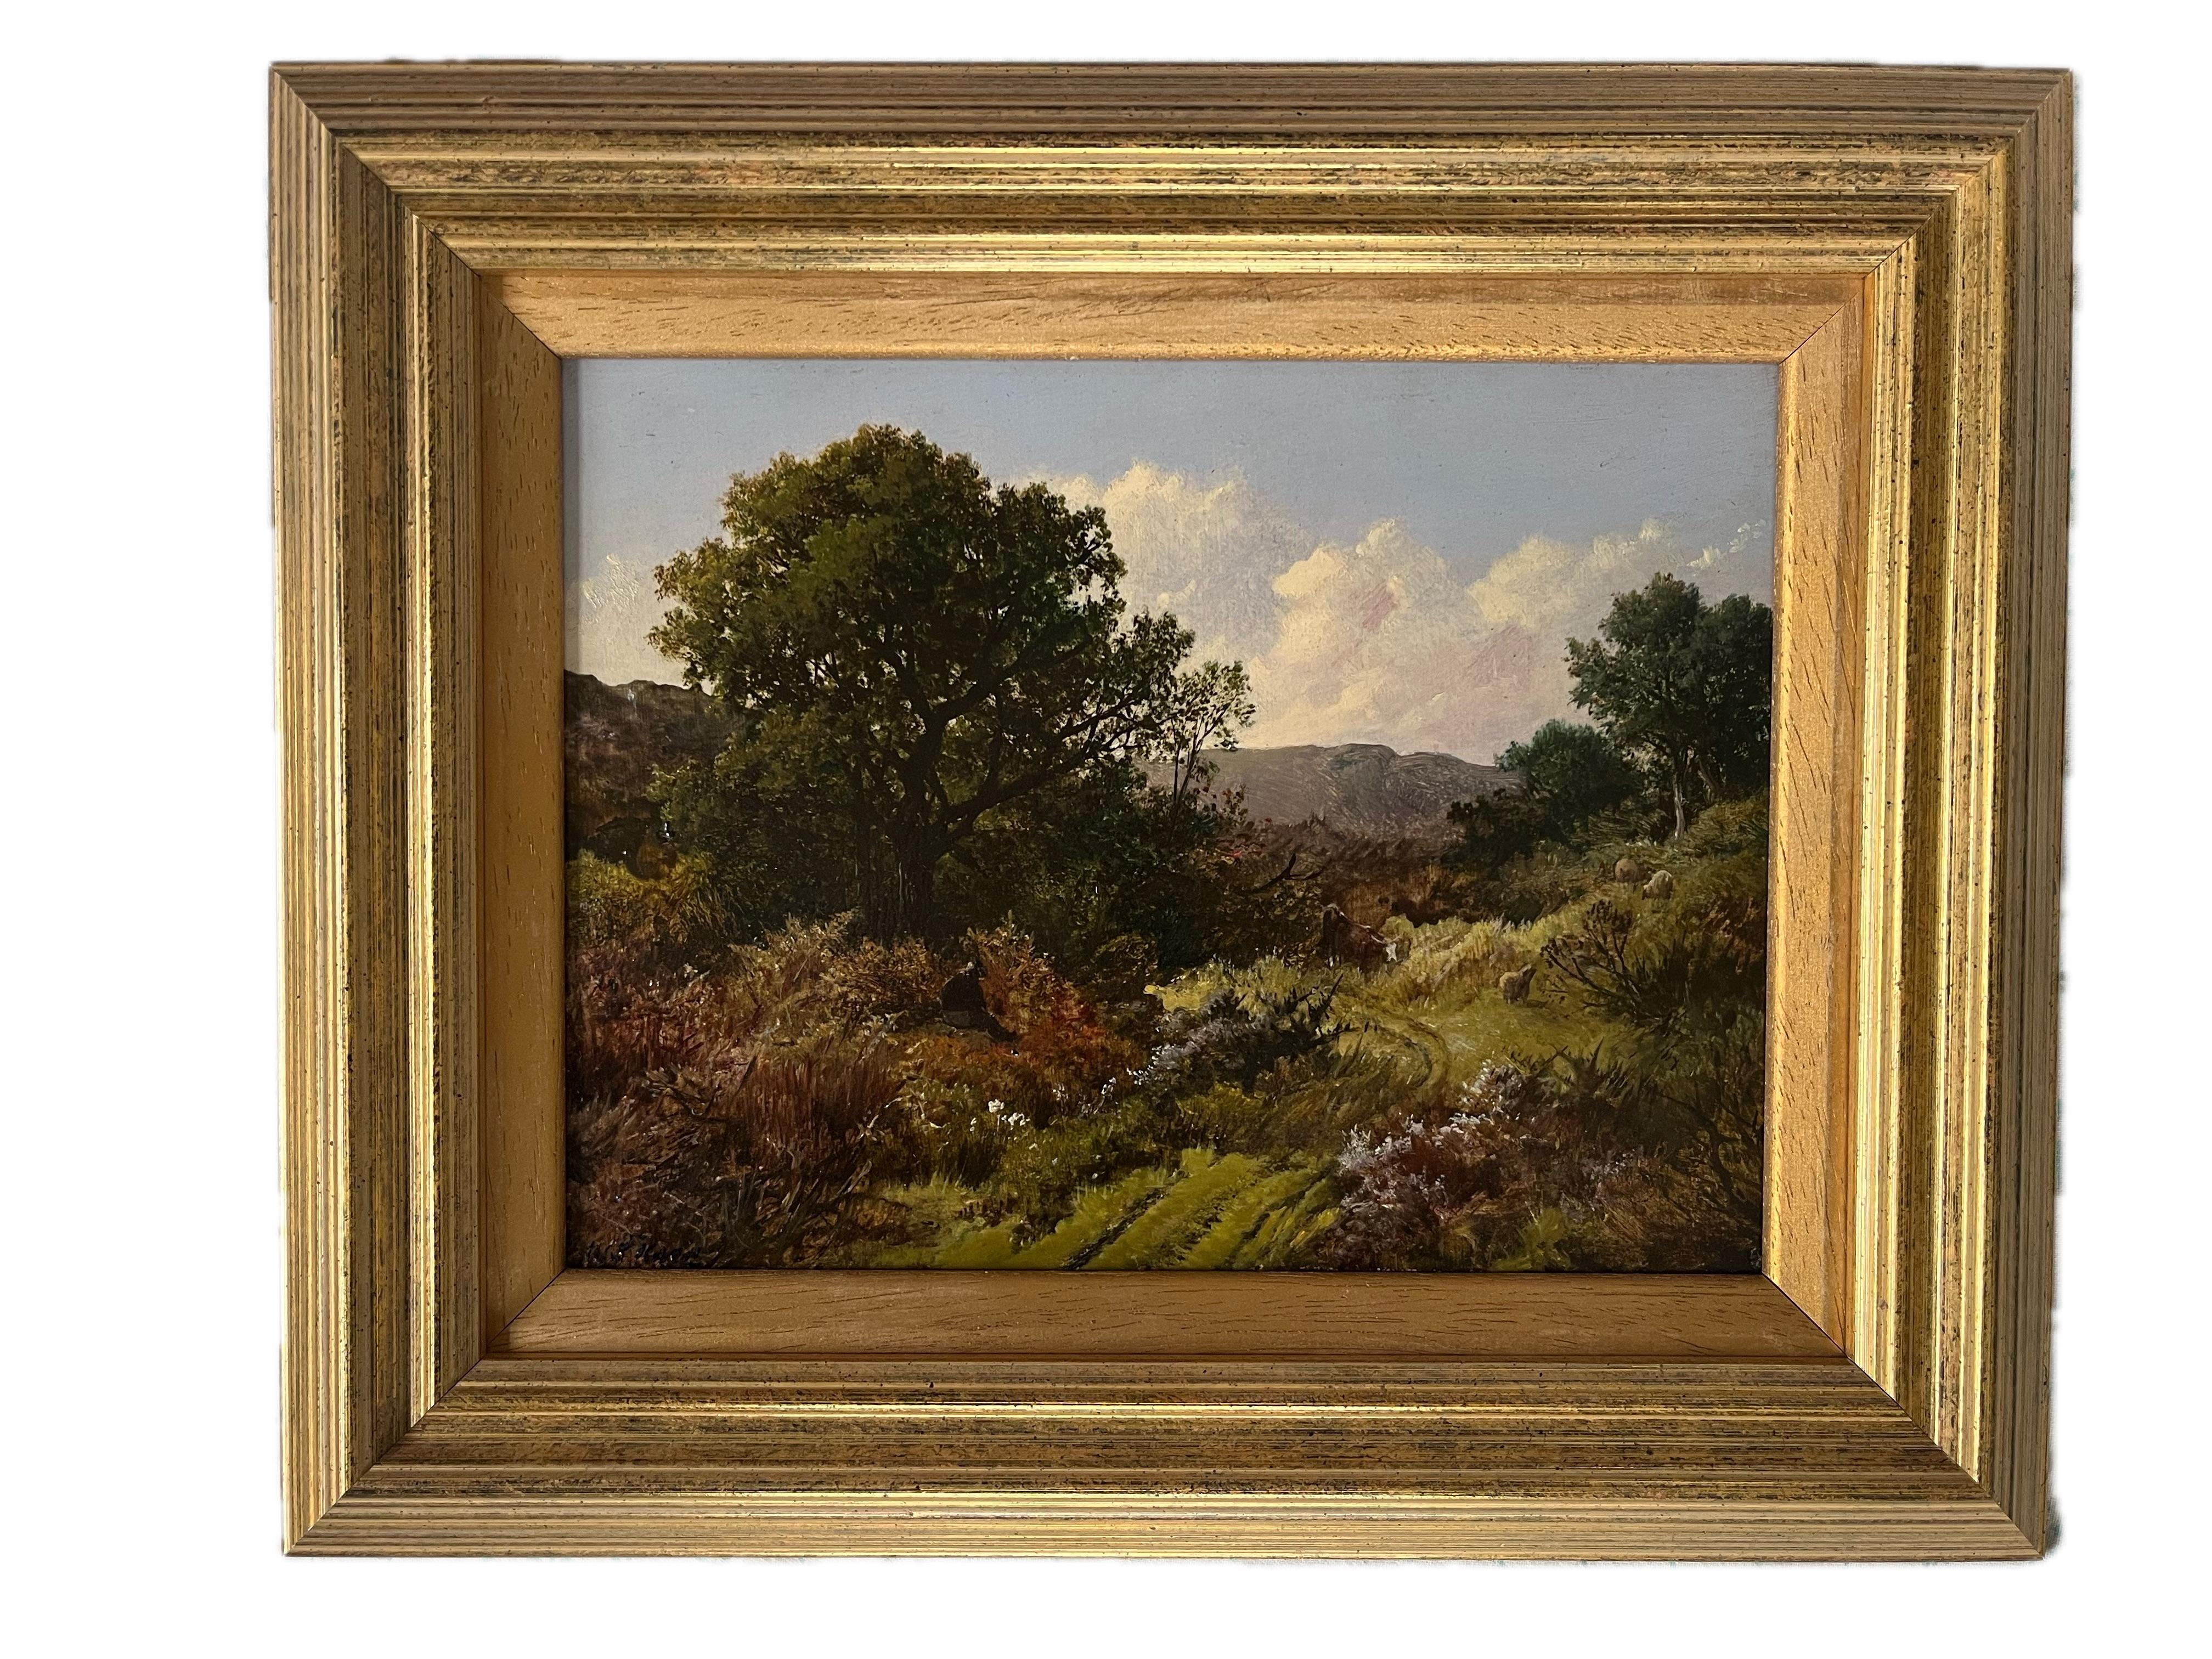 Wunderschönes viktorianisches Öl von grasenden Kühen in den walisischen oder englischen Hügeln – Painting von William S Rose